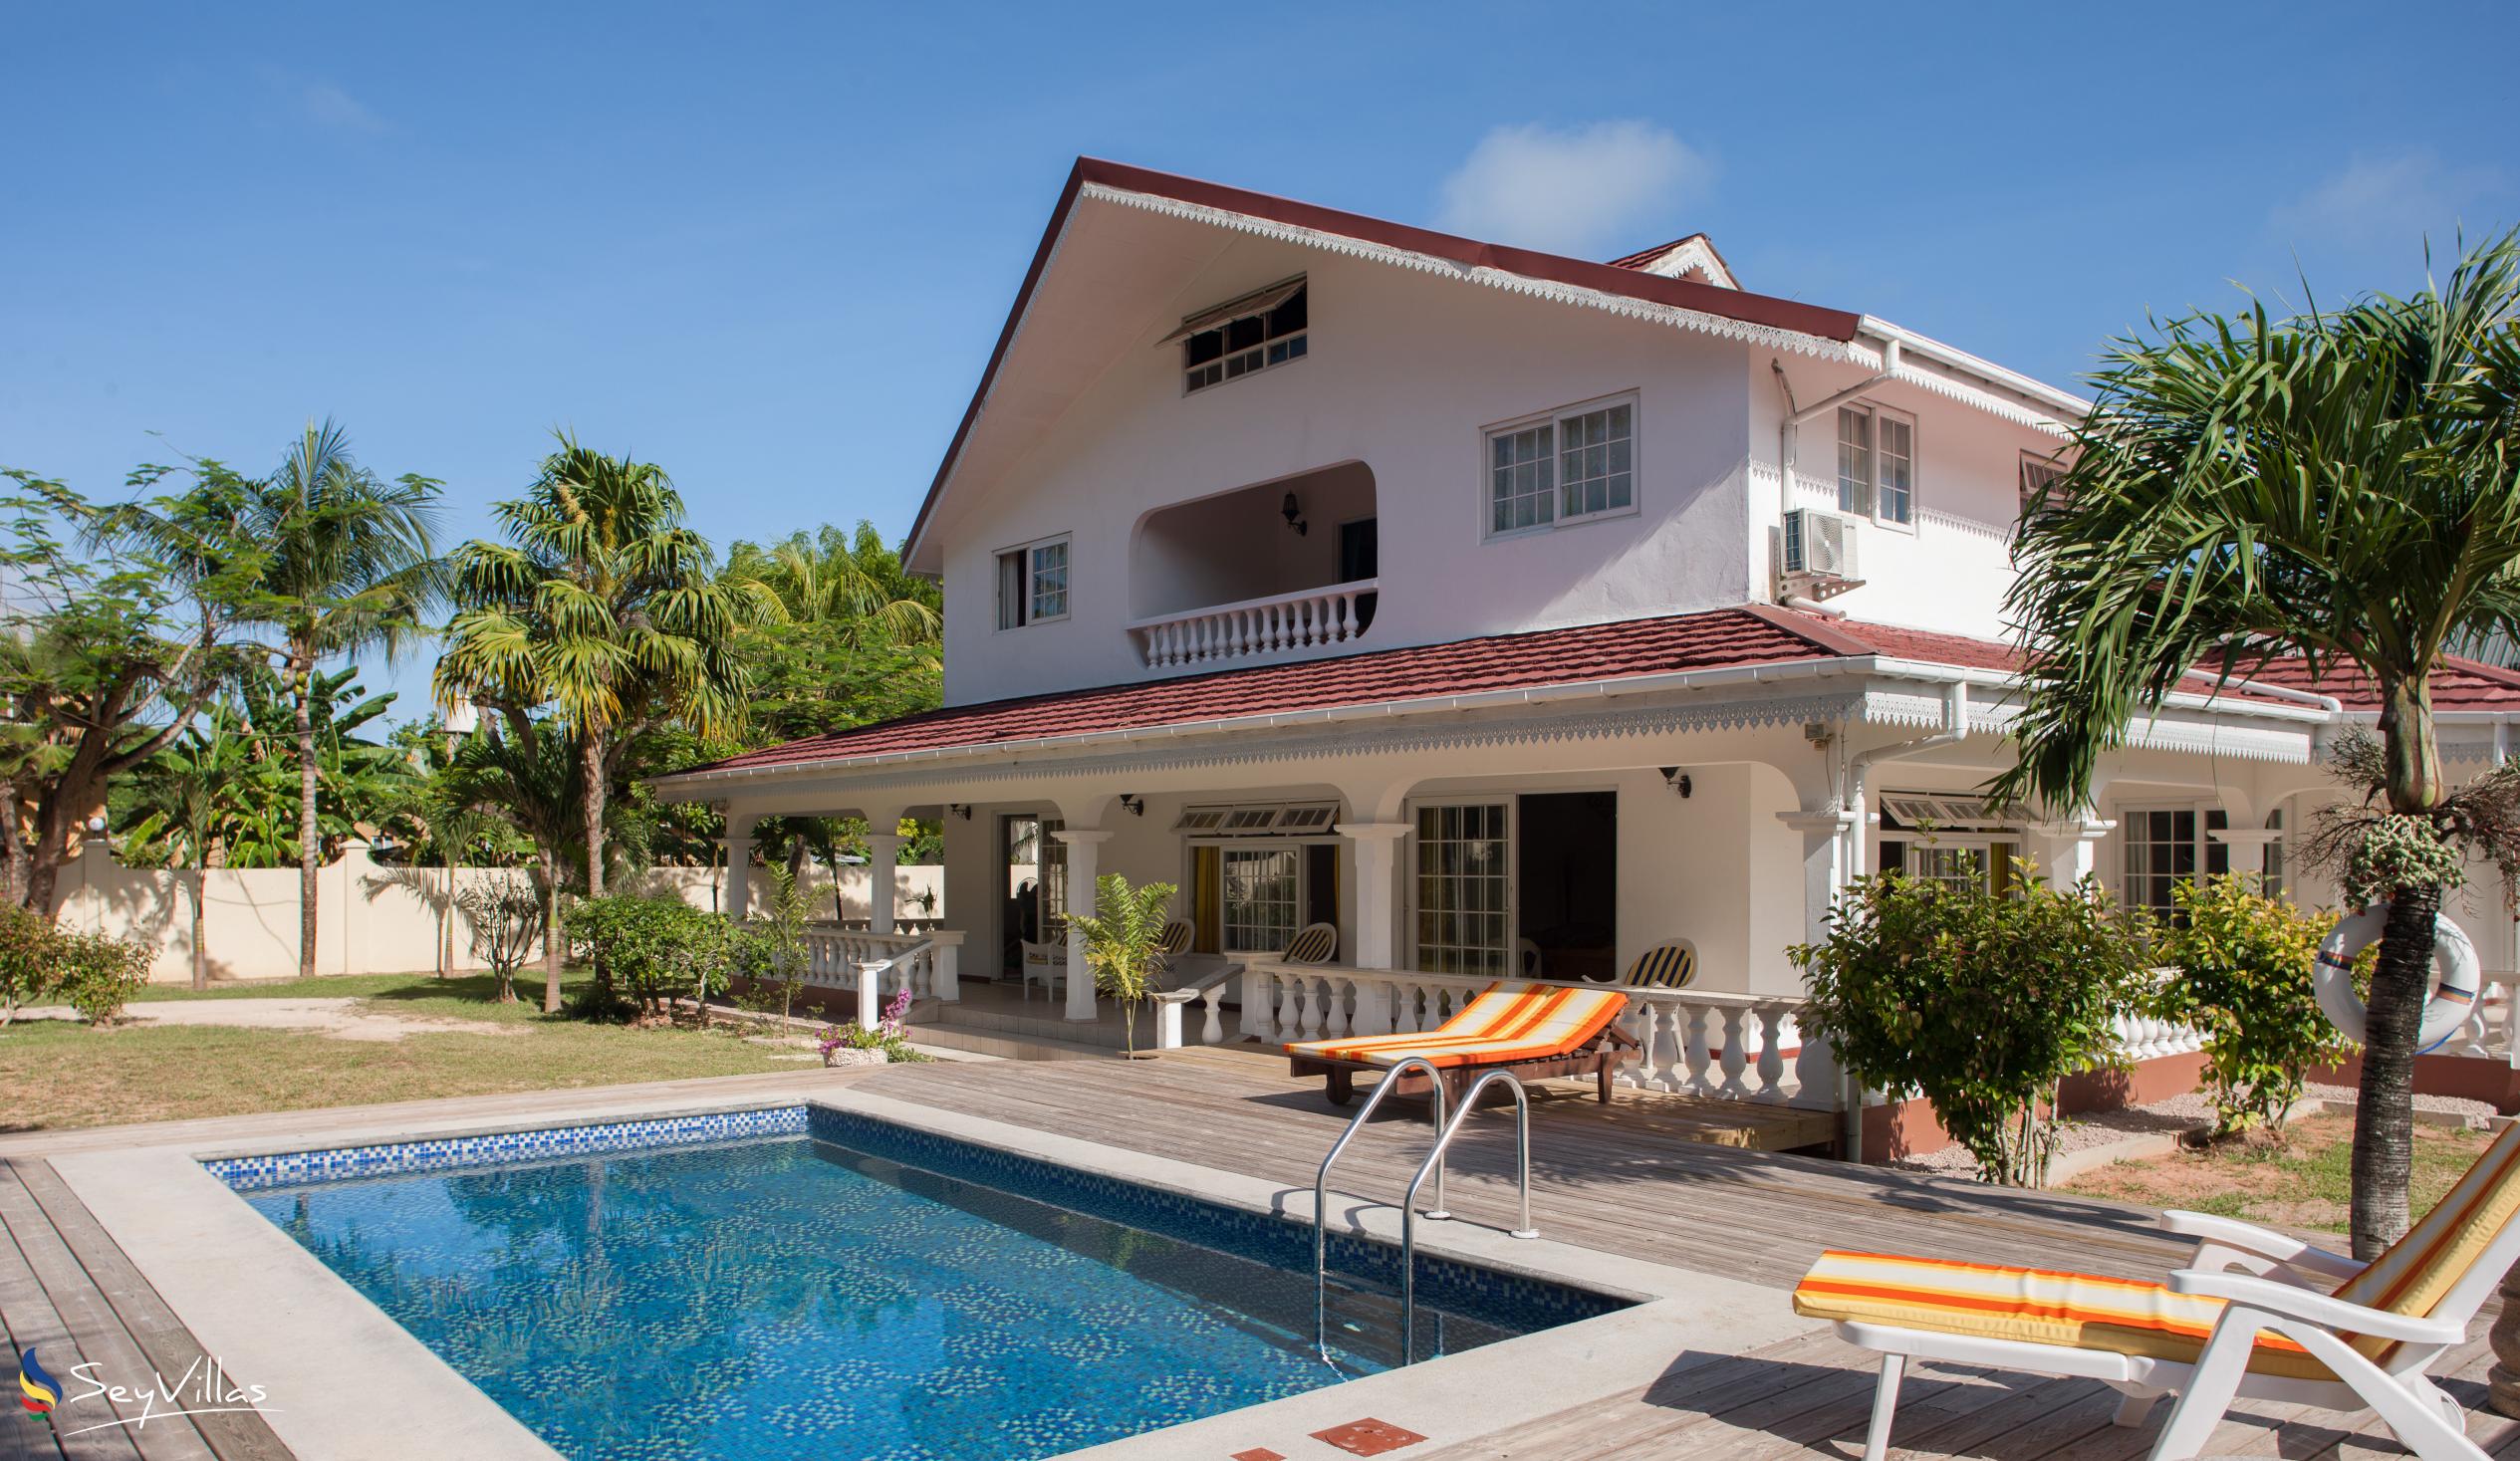 Photo 1: Villa Confort - Outdoor area - Praslin (Seychelles)